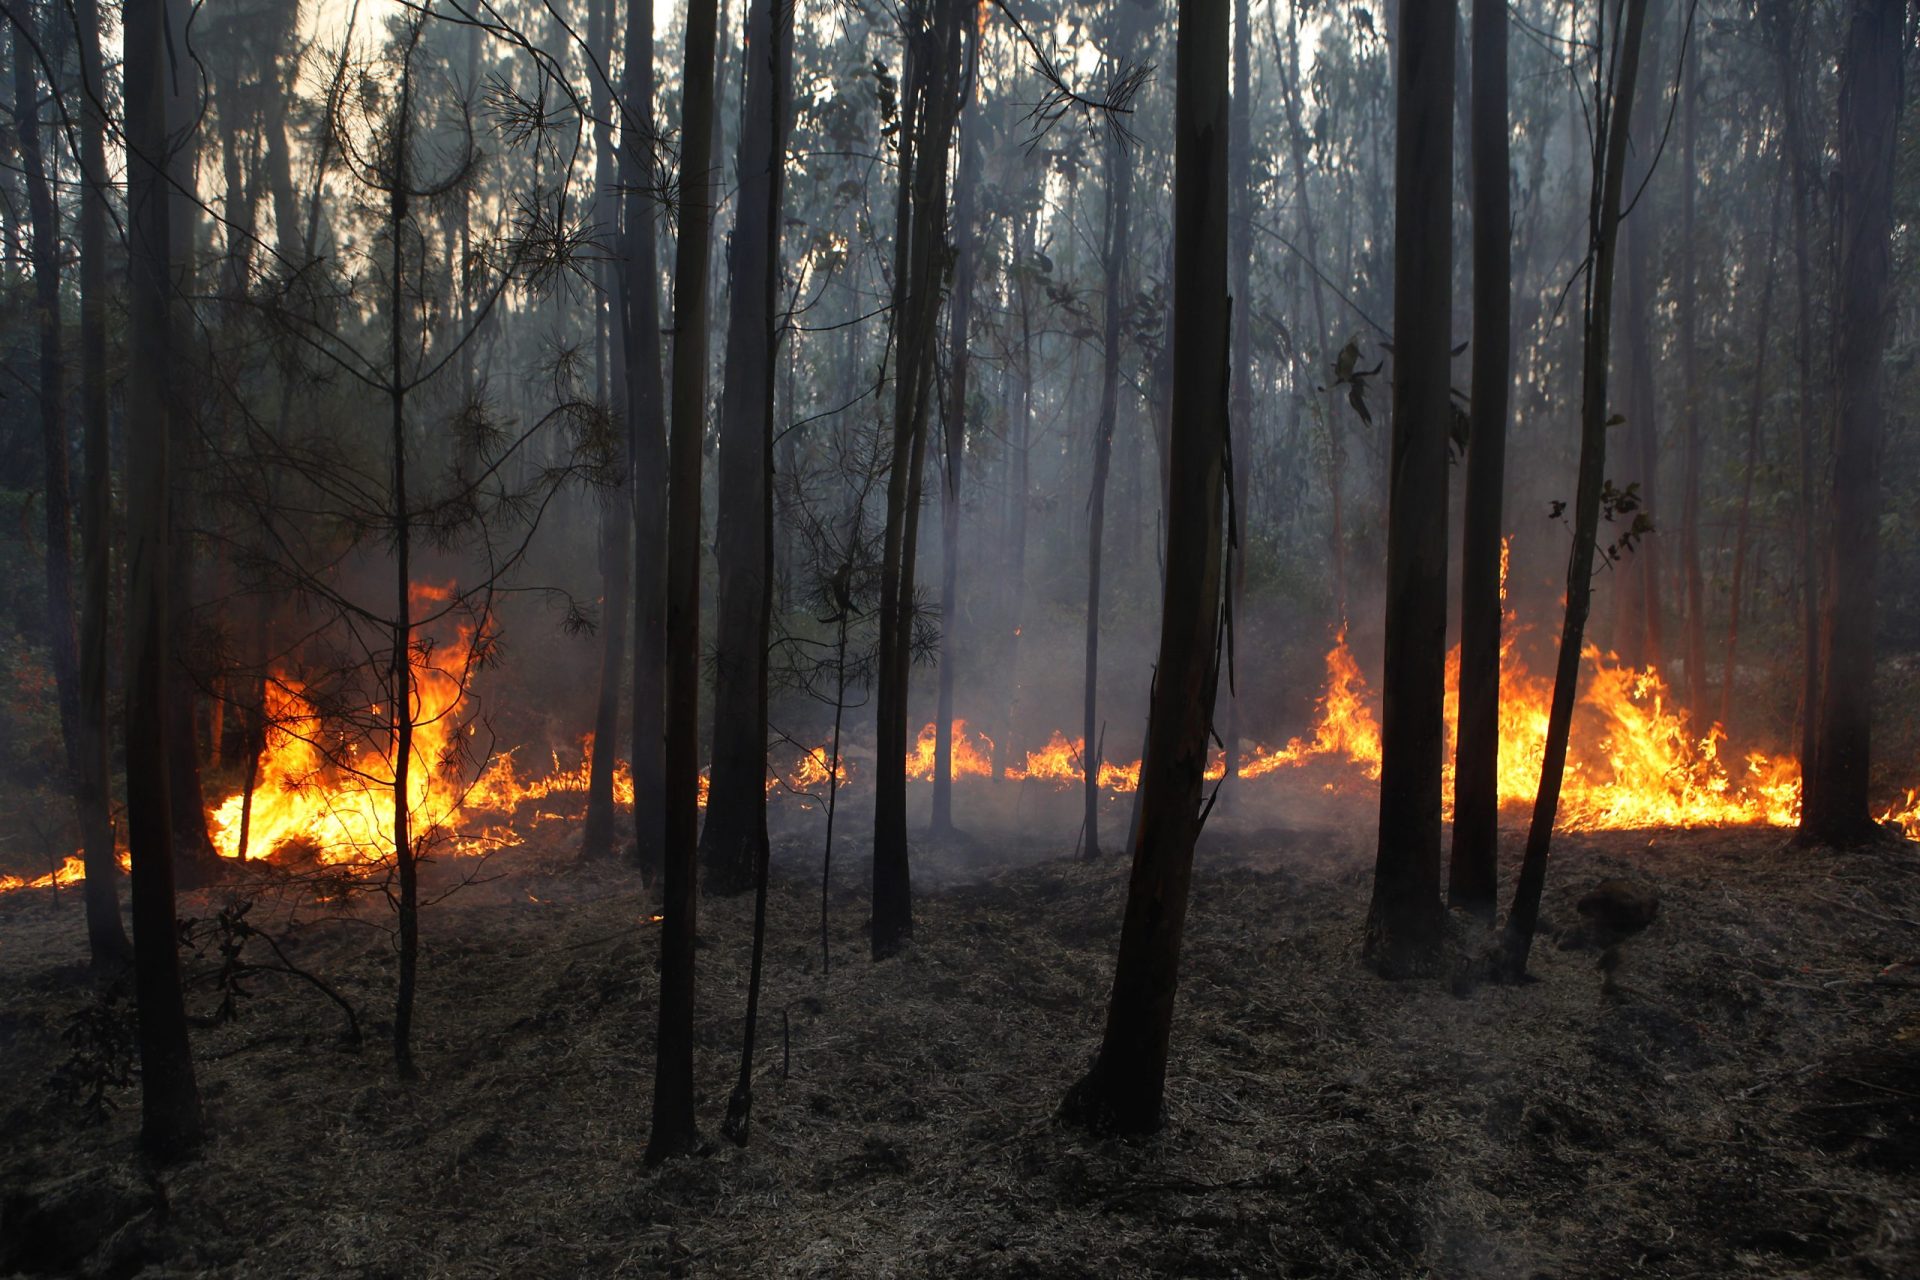 Portugal envia 100 operacionais para apoiar Espanha a combater incêndio